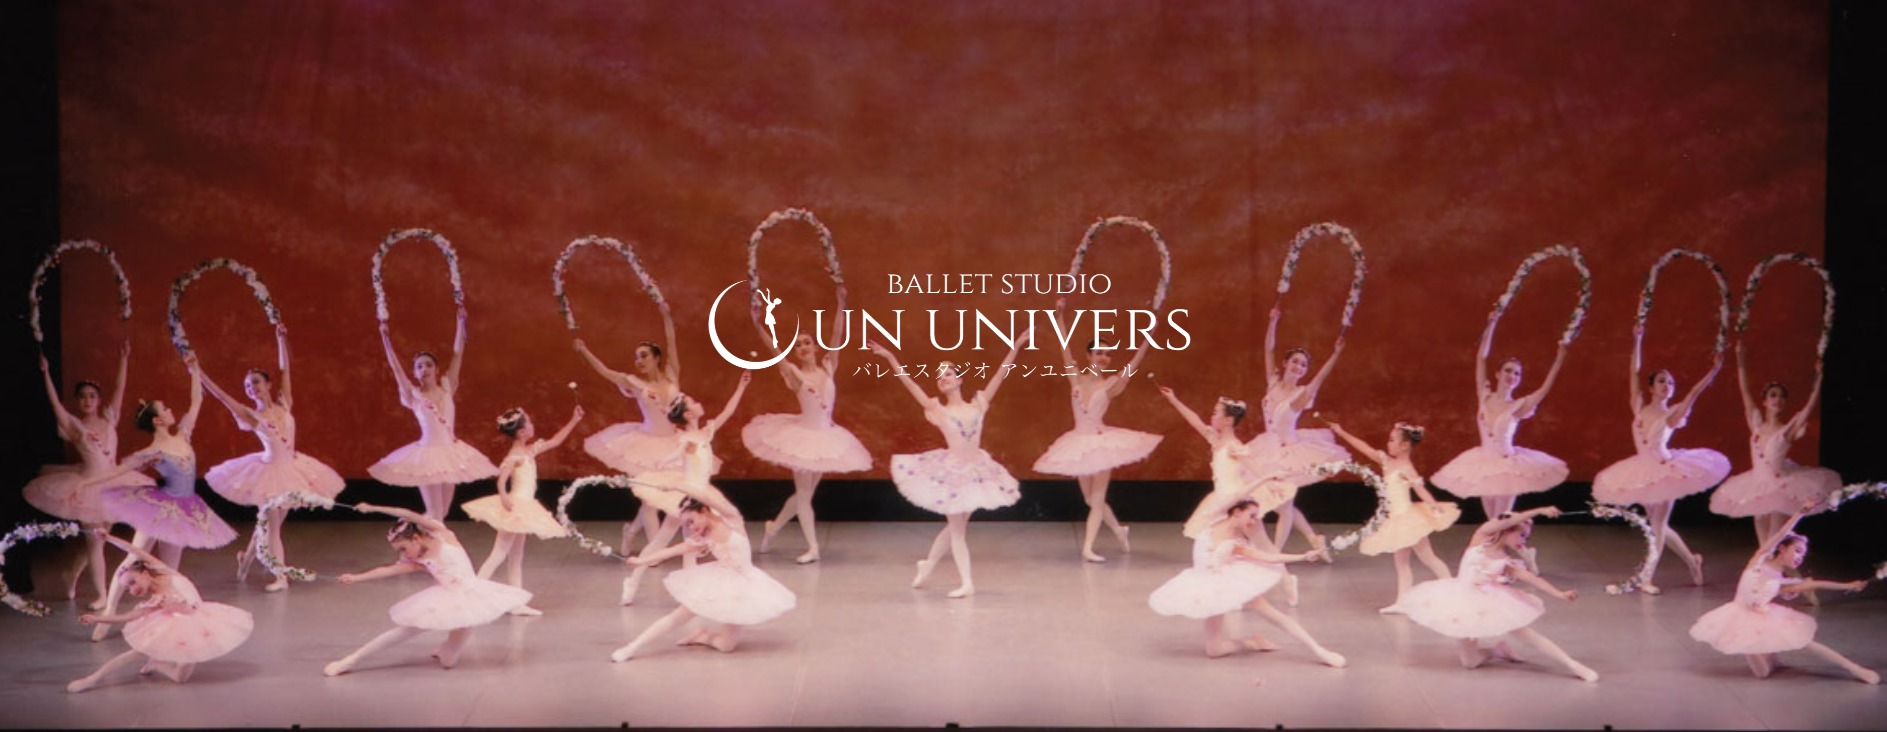 バレエスタジオ アン・ユニベールの施設画像